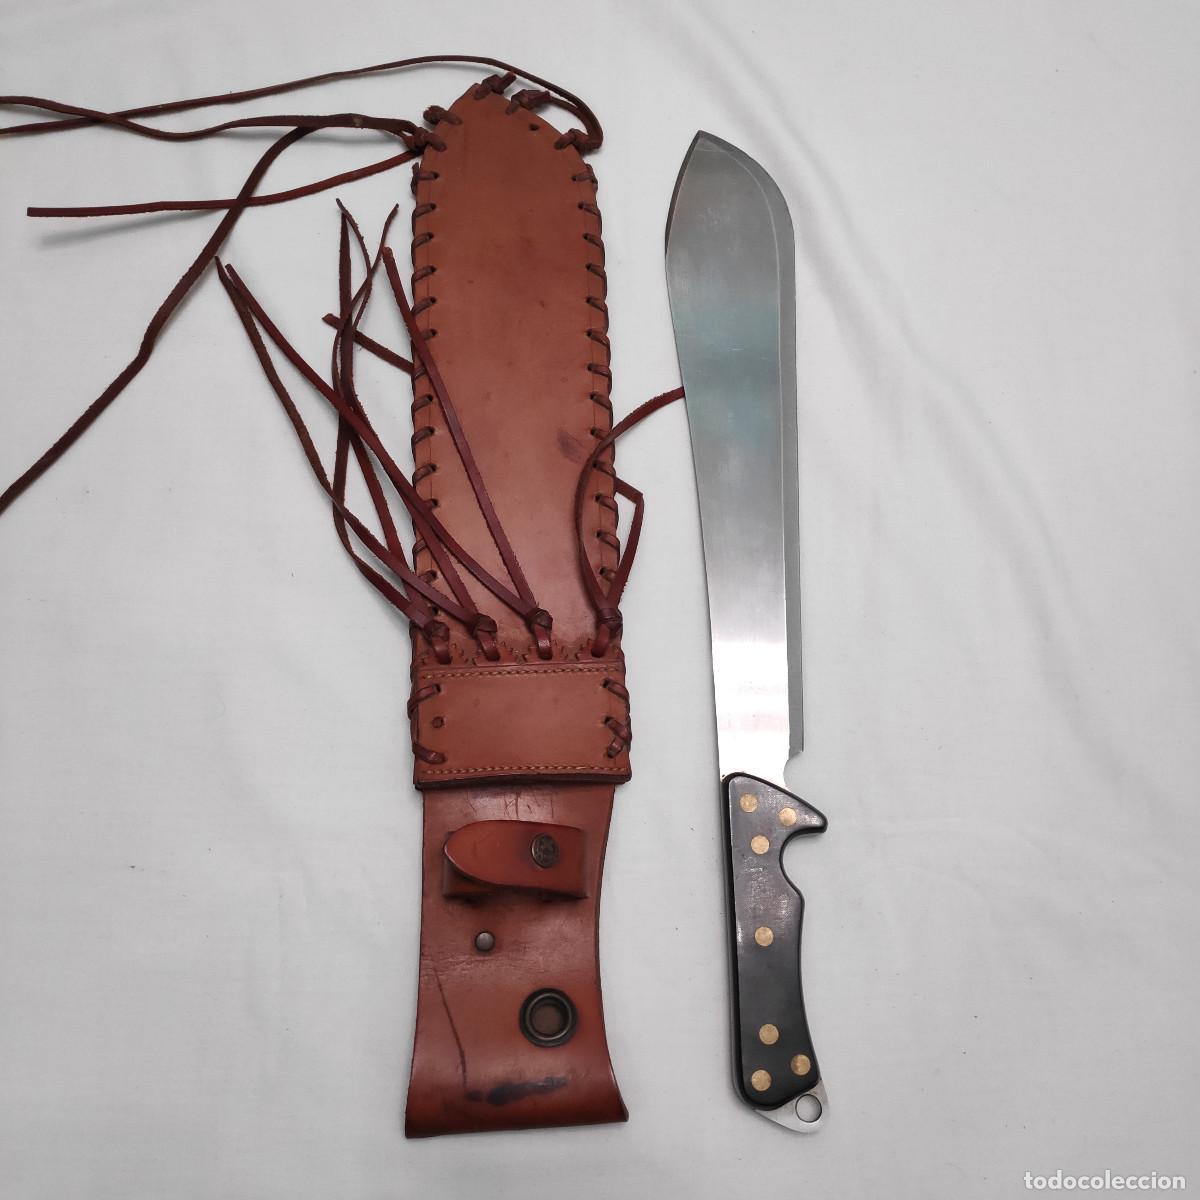 Comprar machete Bolo grande con funda de cuero en ASMC